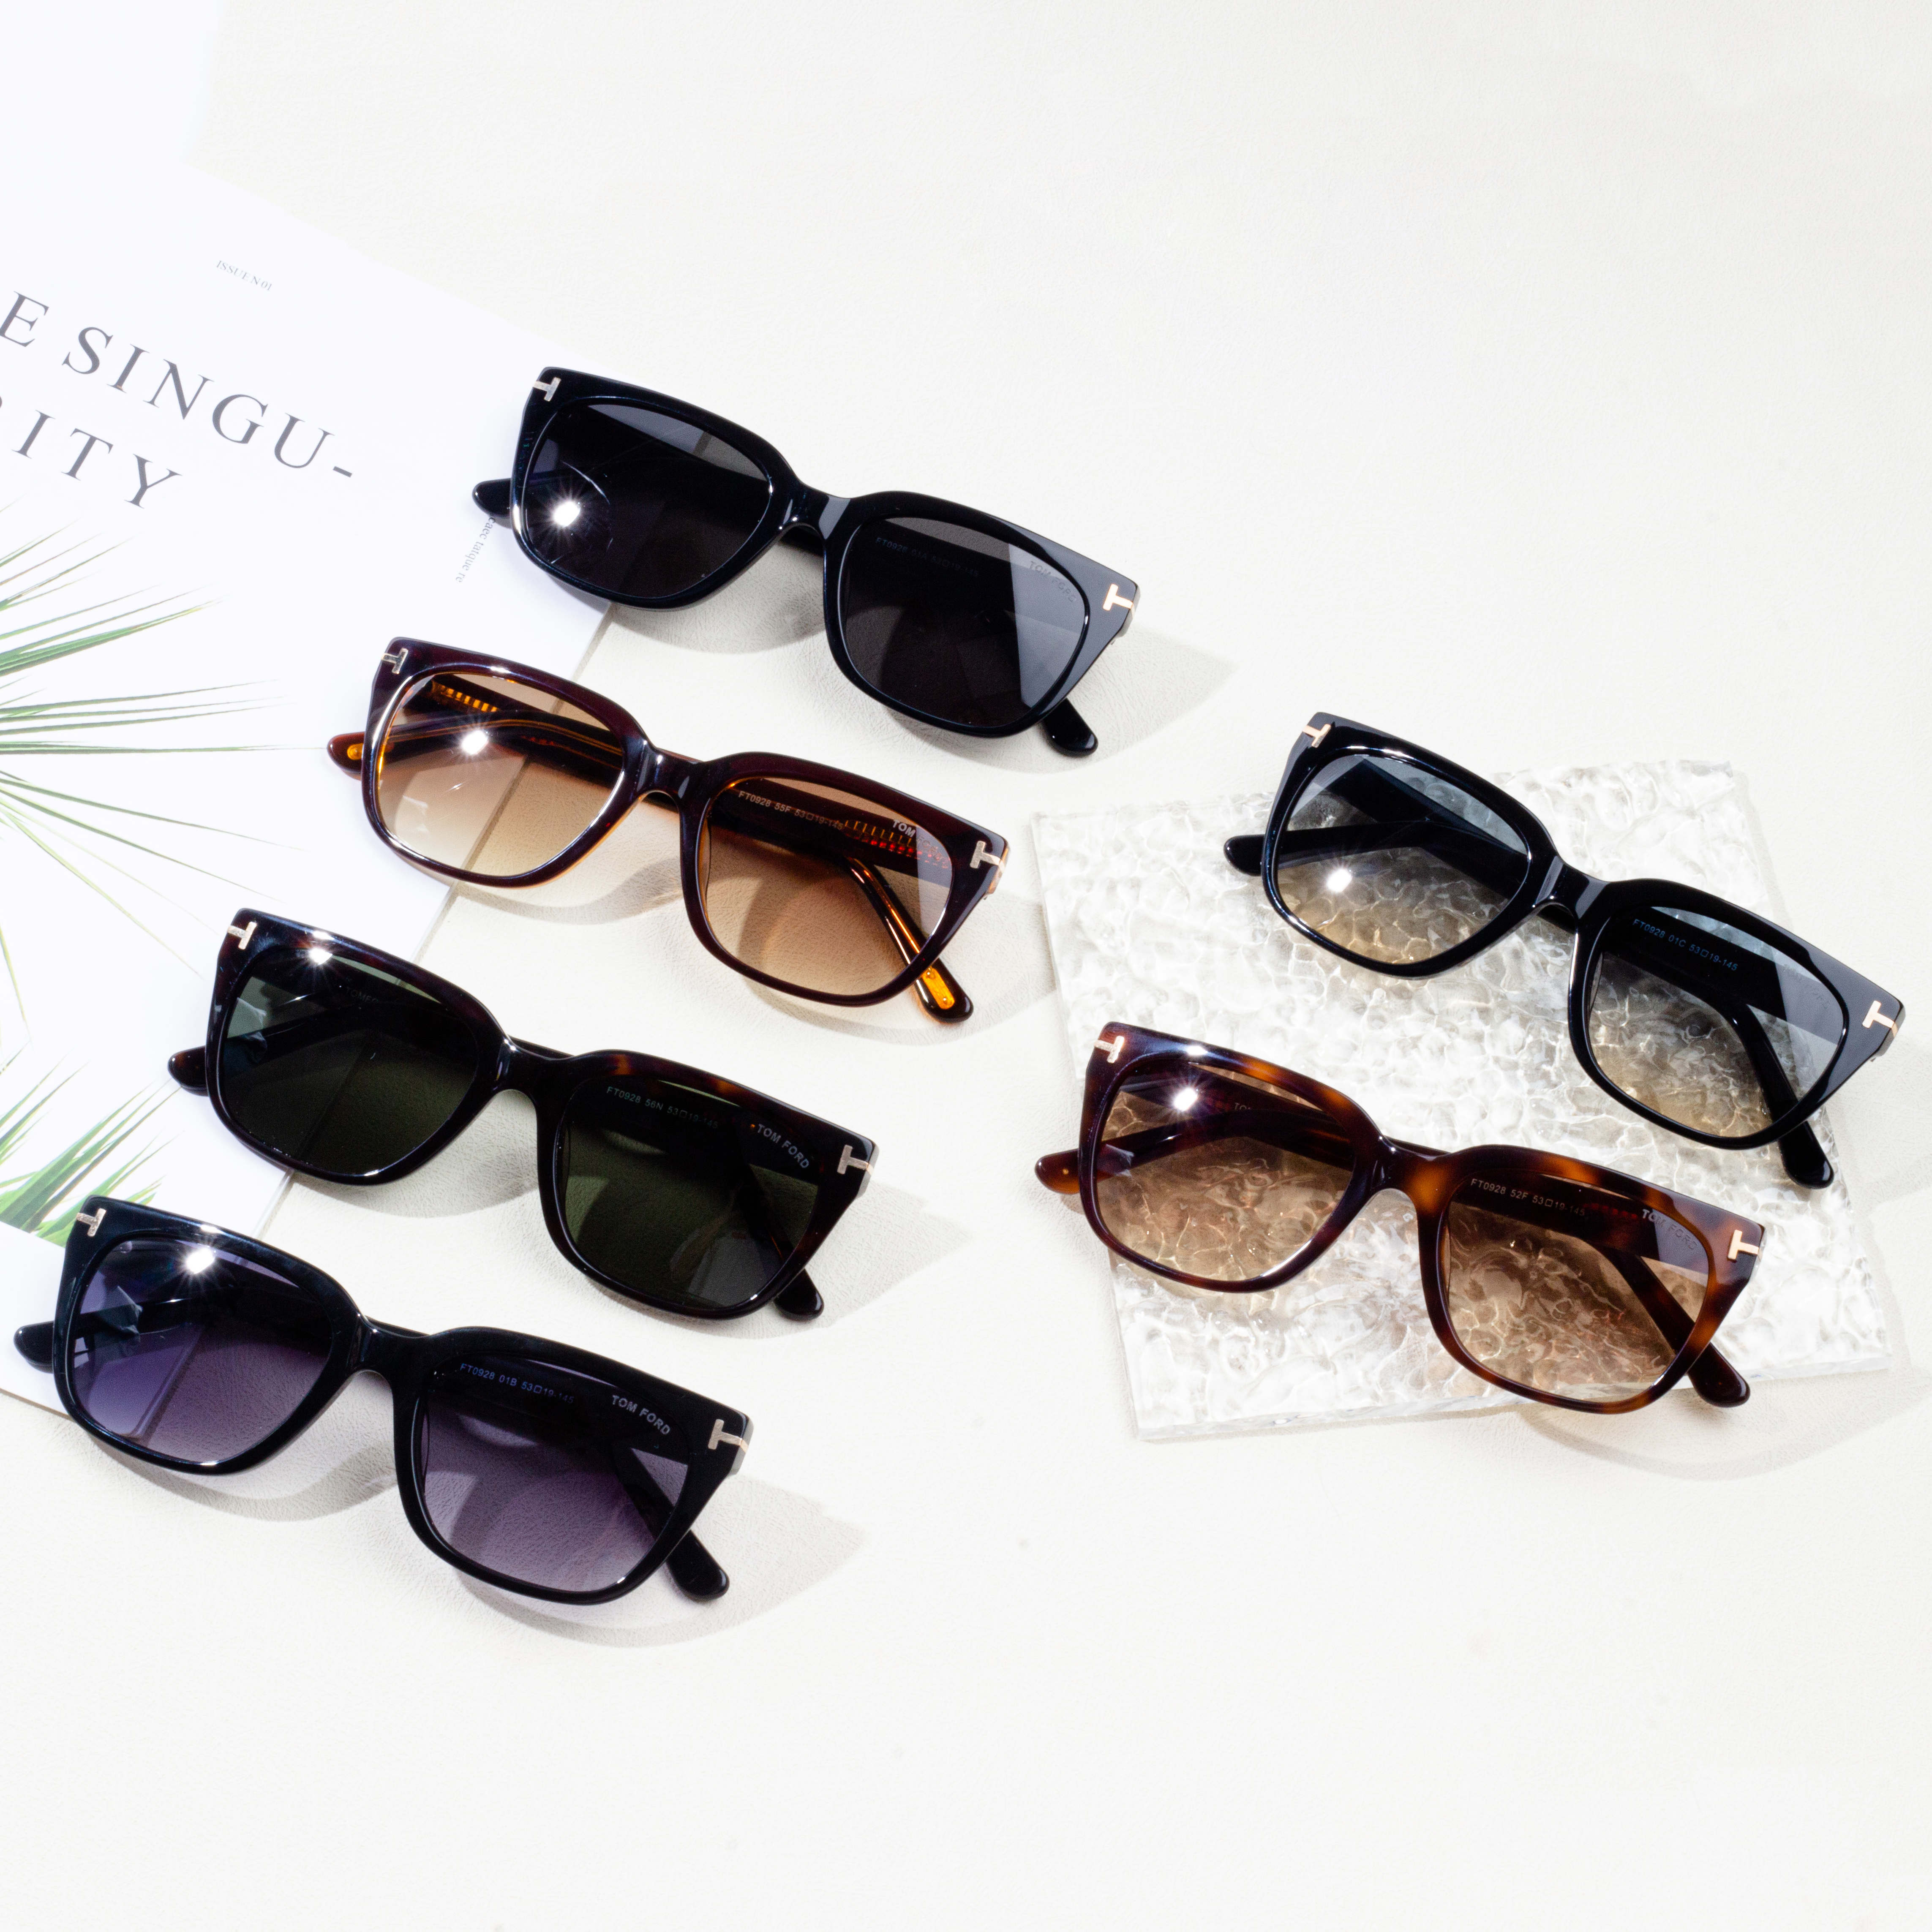 Egyedi divatos női luxus divatos nagykereskedelmi napszemüvegek